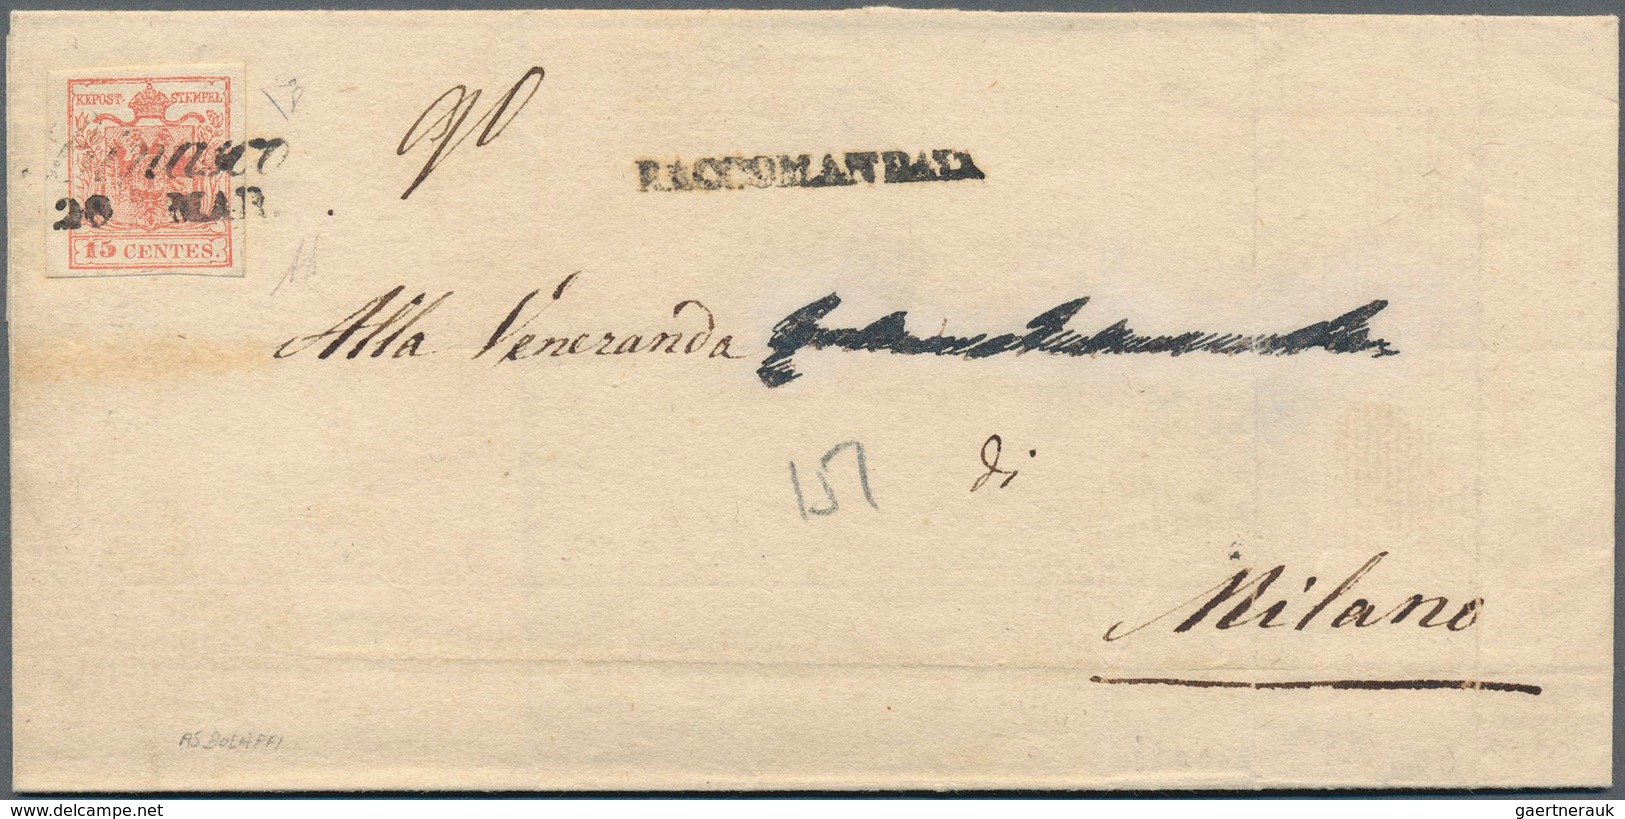 Österreich - Lombardei Und Venetien - Stempel: "BINASCO / 20 MAR", Schreibschriftstempel Auf 15 Cent - Lombardo-Vénétie